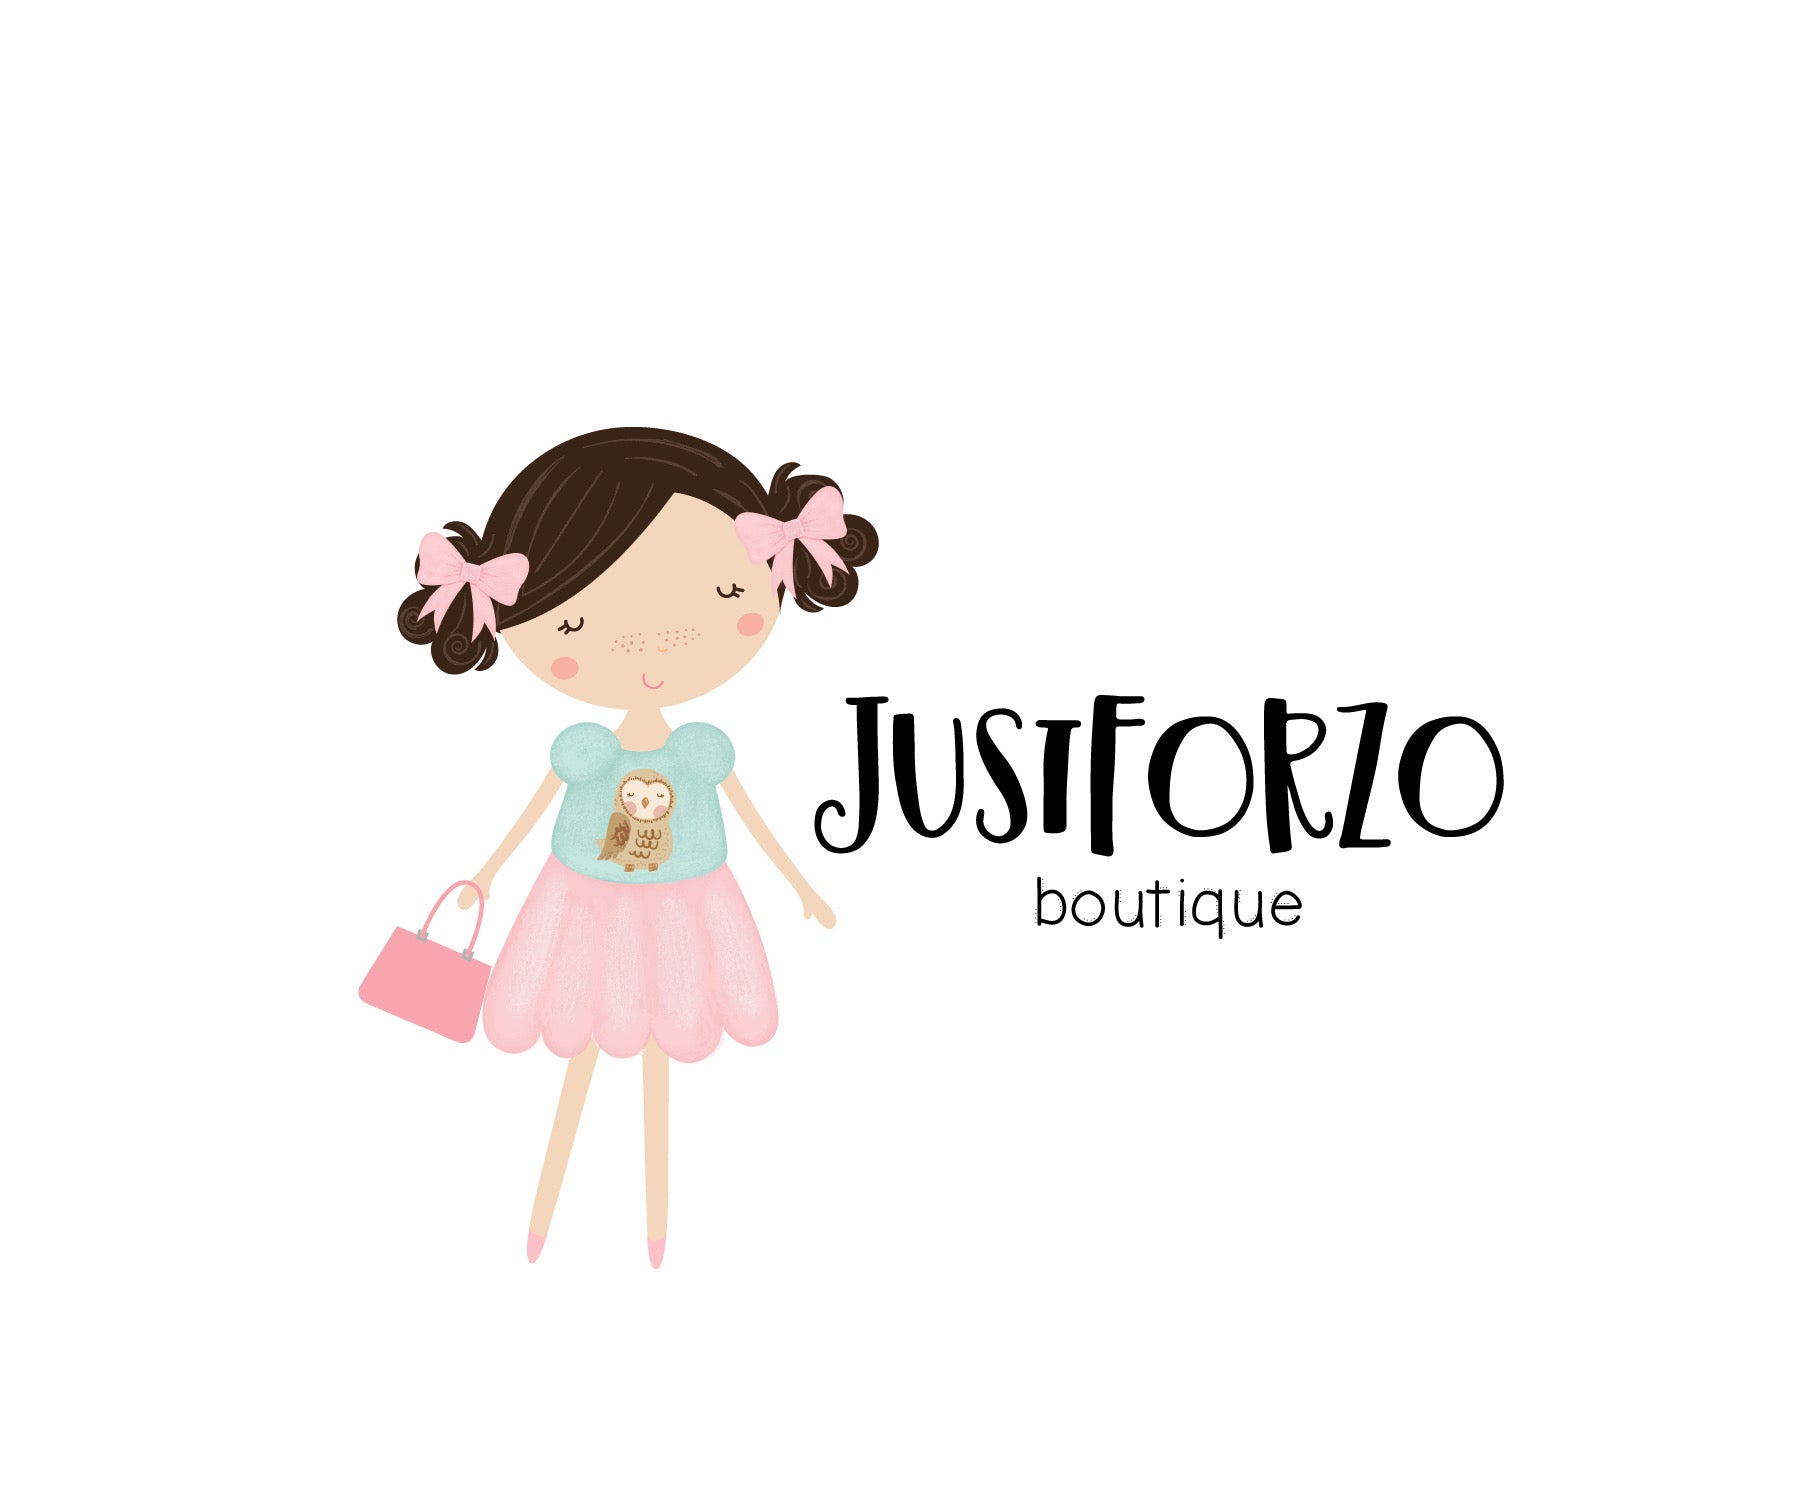 JustforZo boutique, Inc.